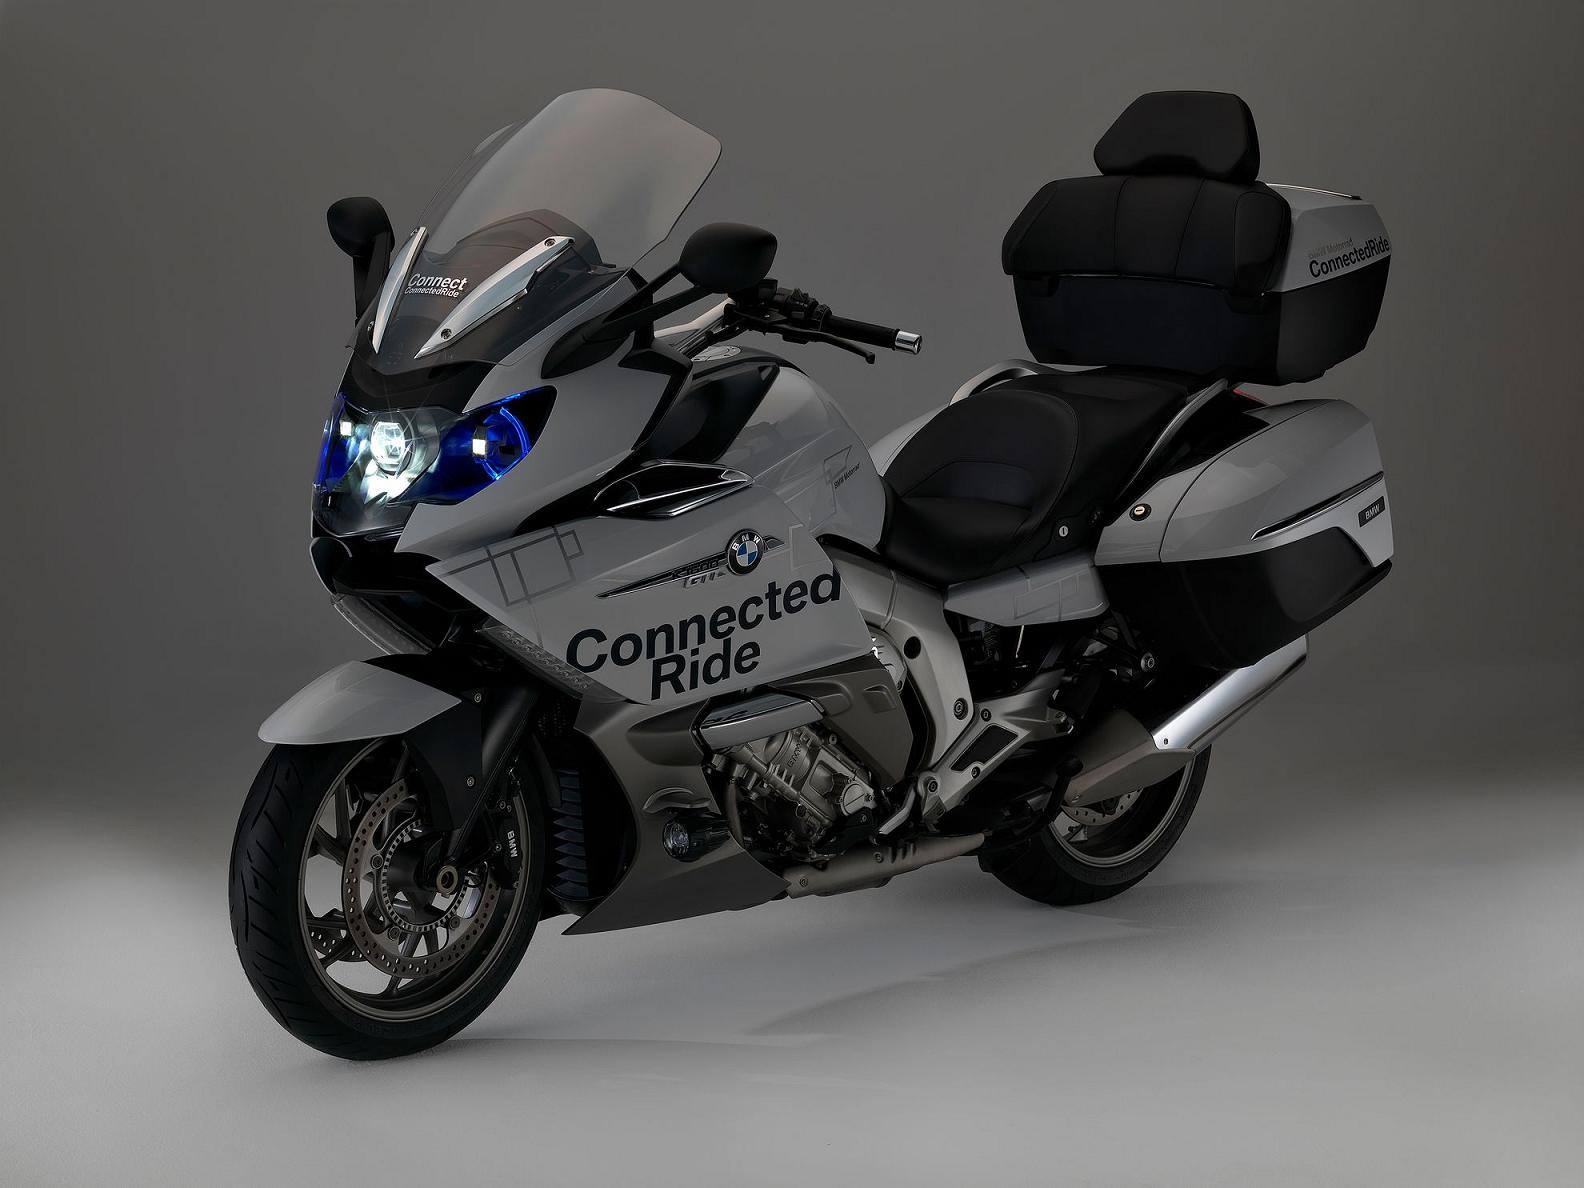 【BMW推出摩托用平视显示头盔与激光科技_宝信优惠促销】 - 网上车市